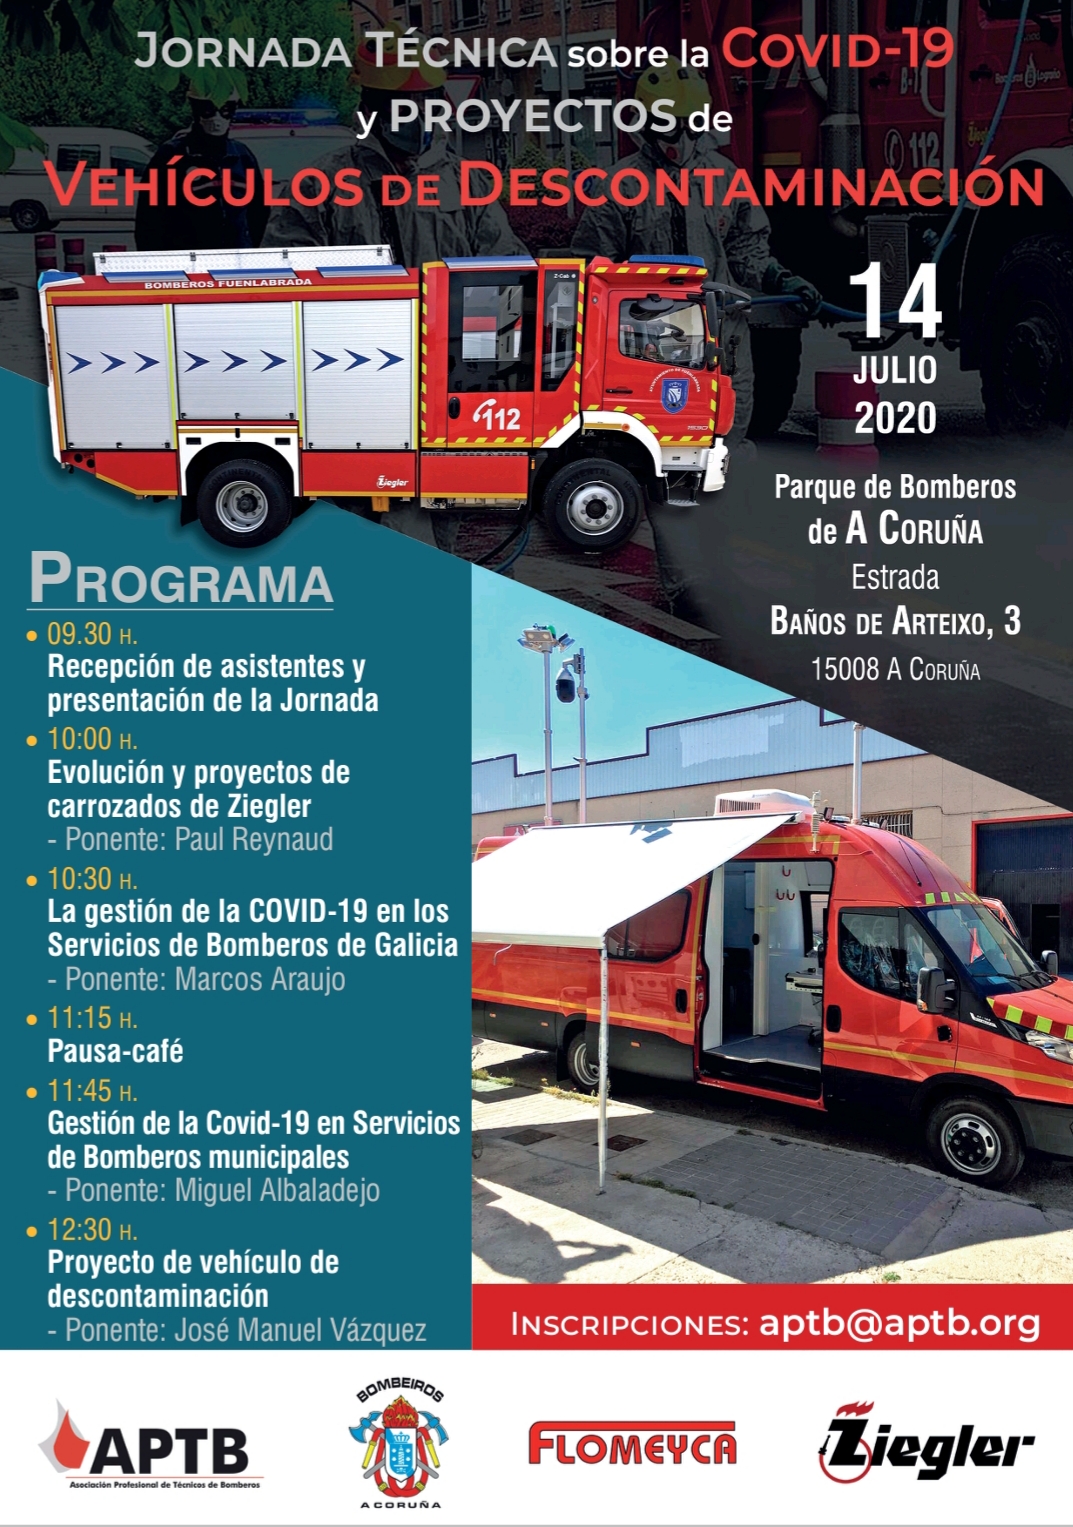 Jornada Técnica gratuita sobre la COVID-19 y vehículos de #descontaminación, el día 14 en A Coruña